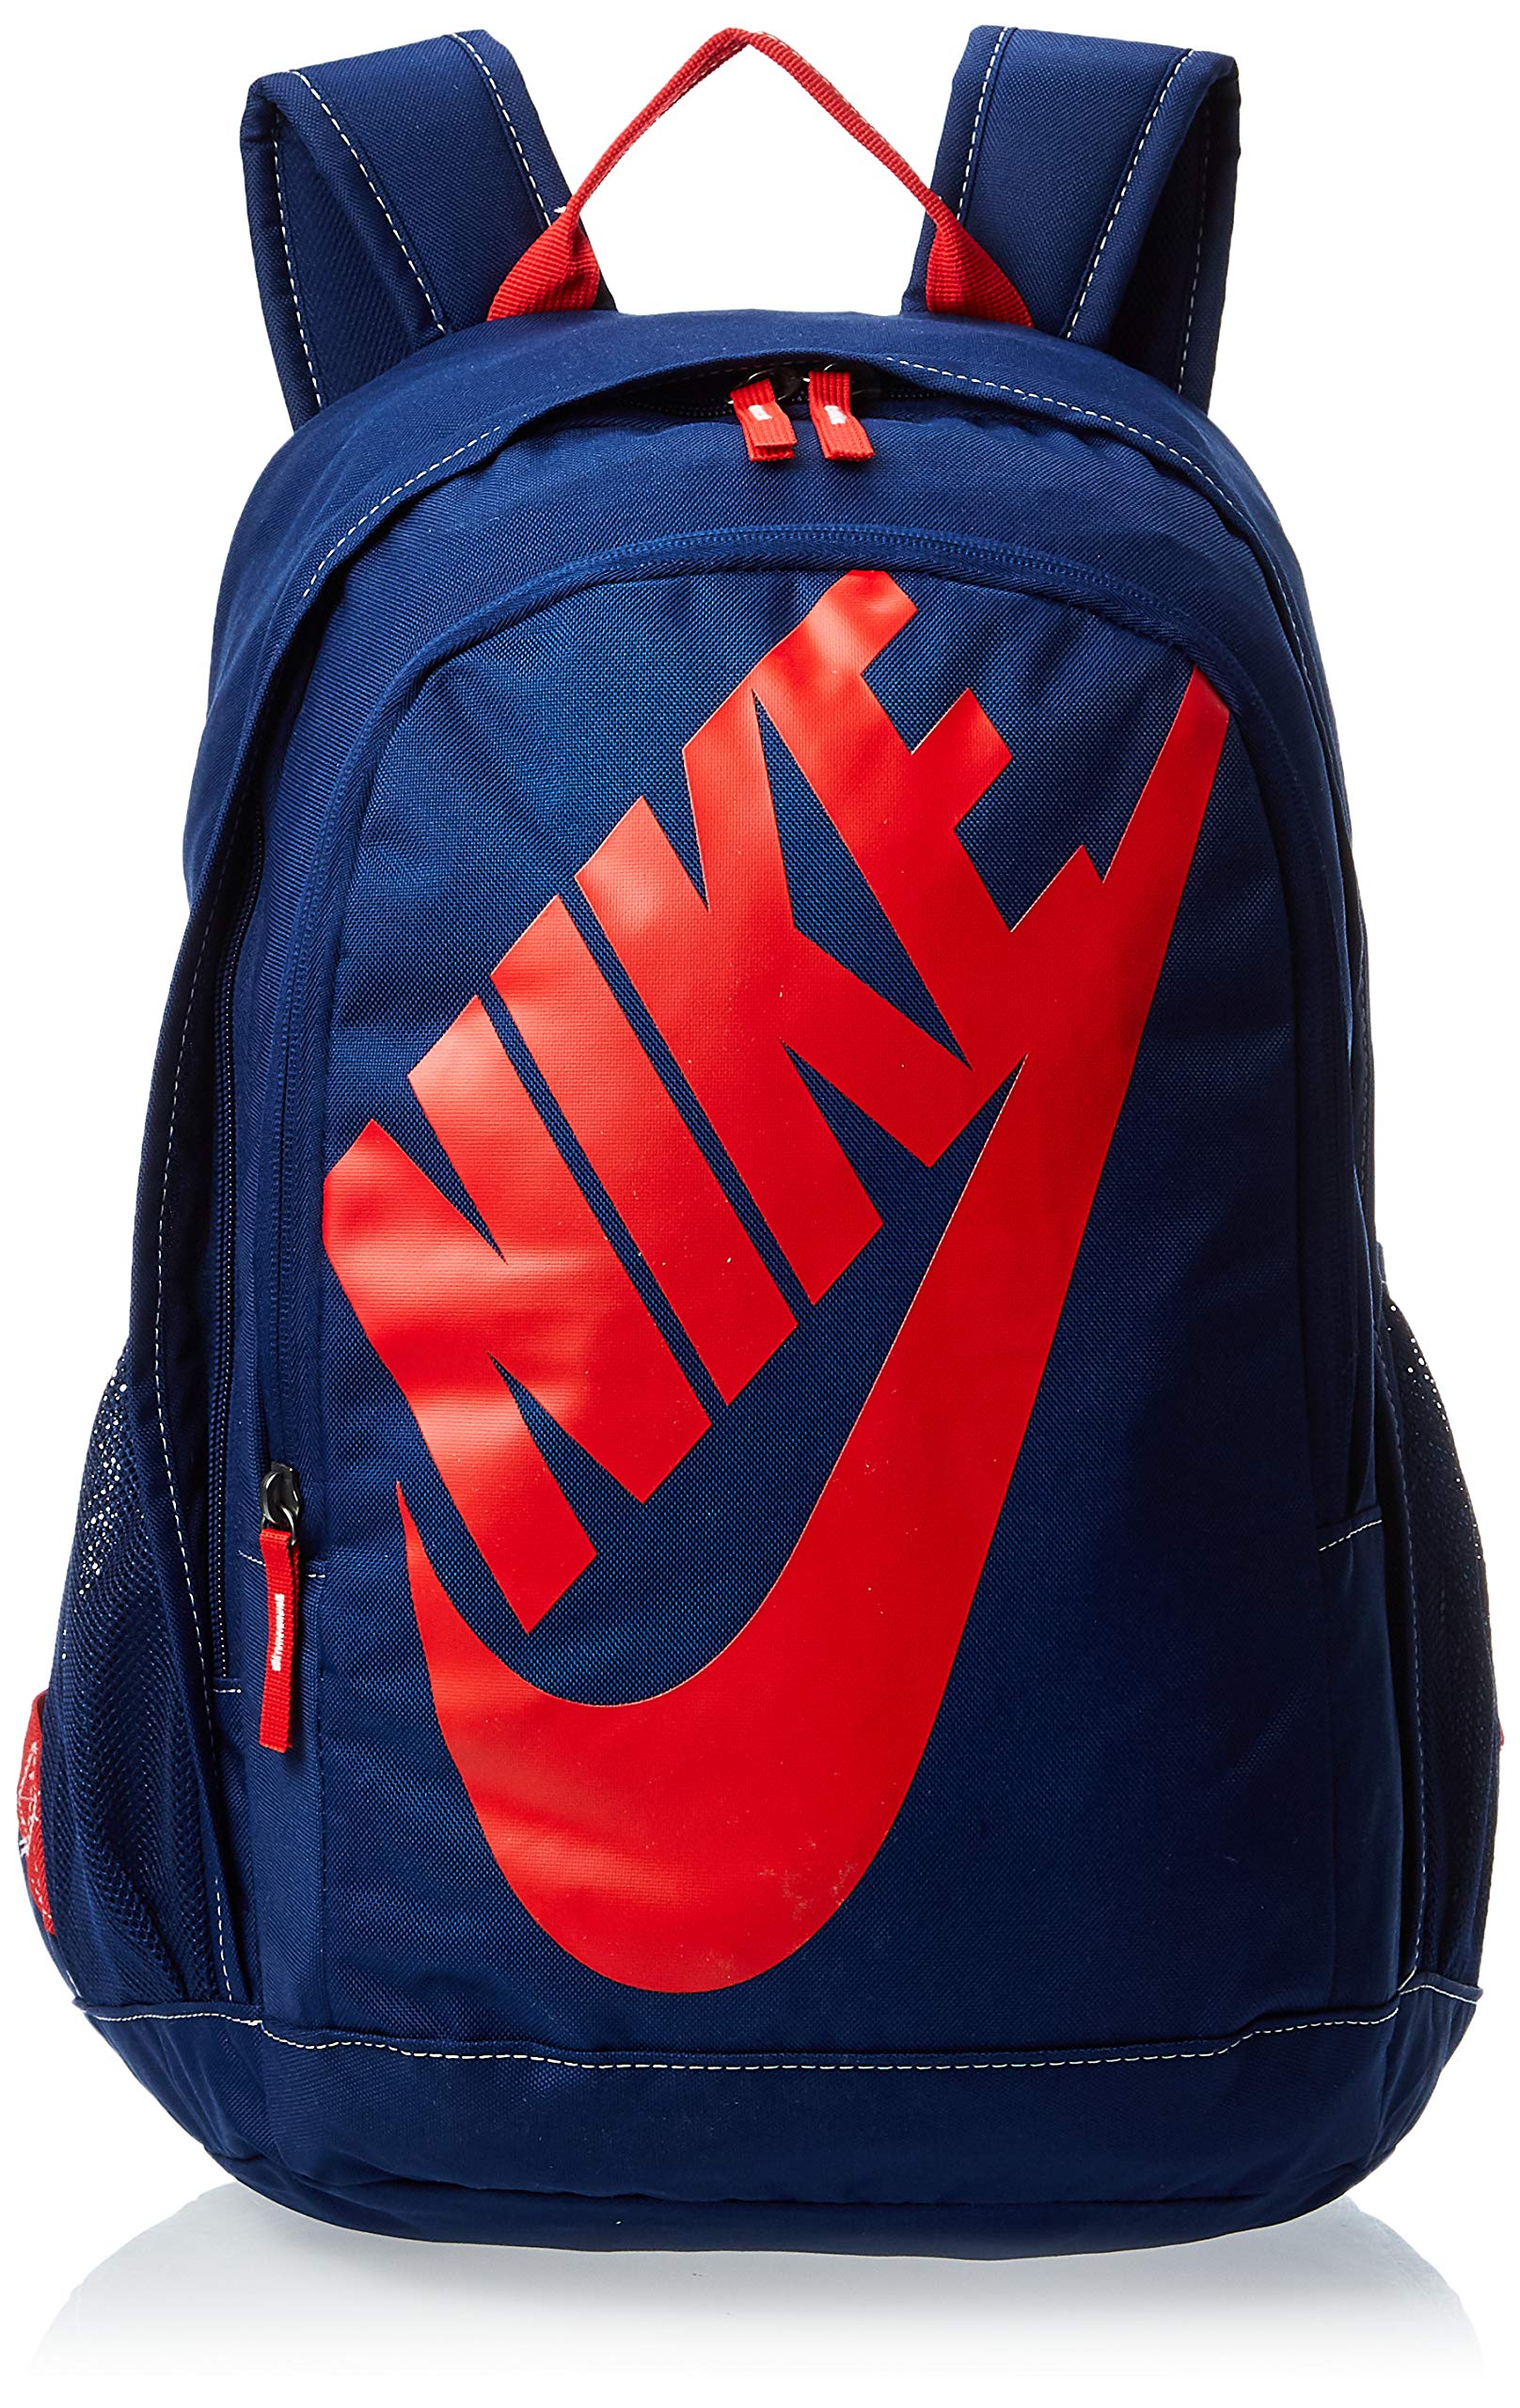 Nike Blue Unisex Element Backpack : Amazon.in: Fashion